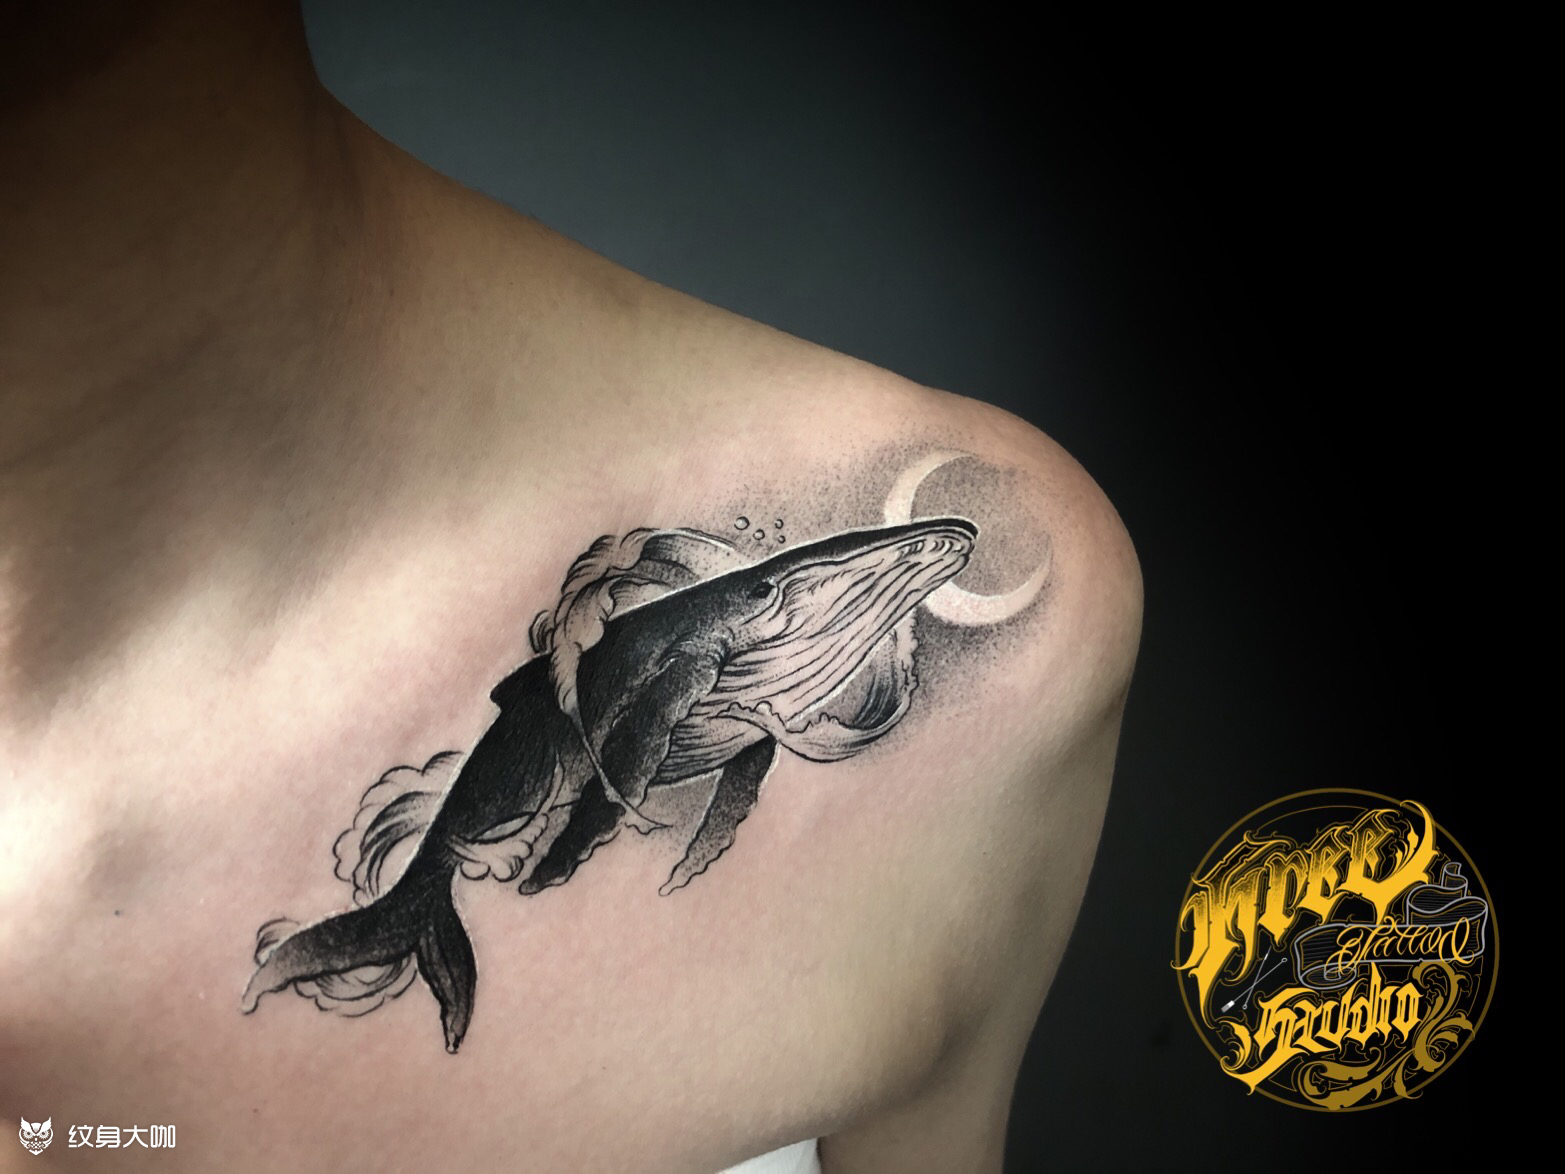 分享一款男人霸气时尚的满背鲤鱼纹身图案